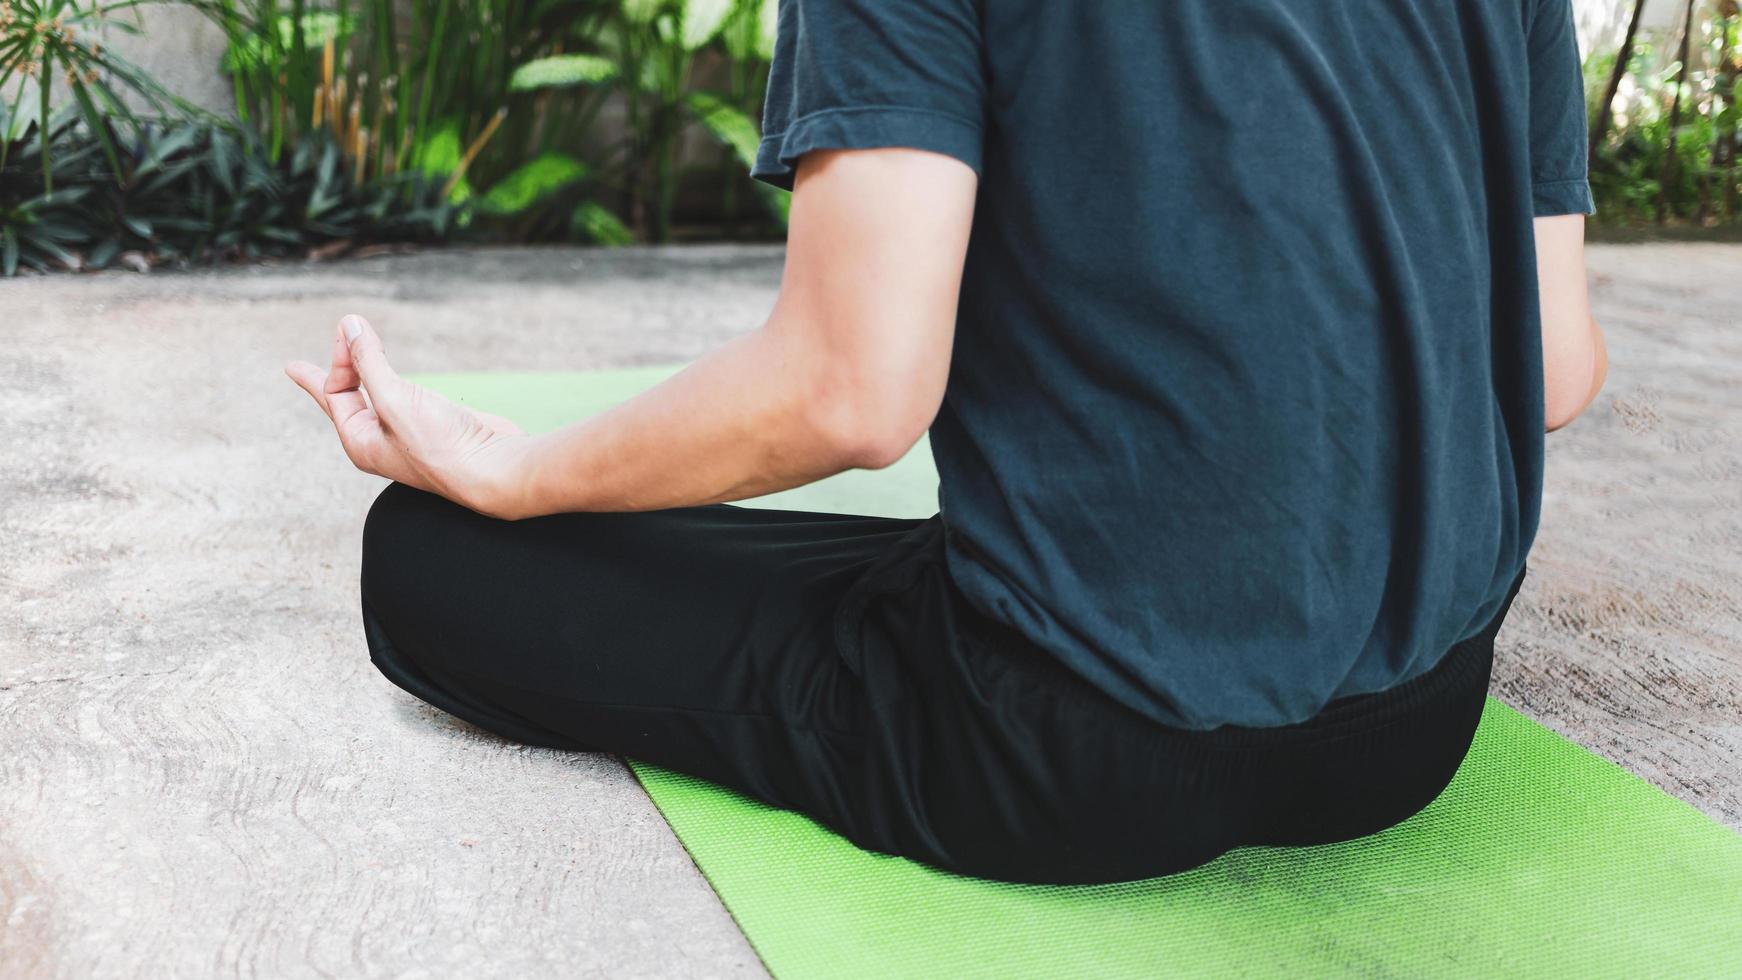 joven asiático practicando yoga, respiración, meditación, ejercicio adha, padmasana, pose de medio loto con pose de barro en la alfombra de yoga verde. ejercicio en el concepto de vida garden.healthy foto